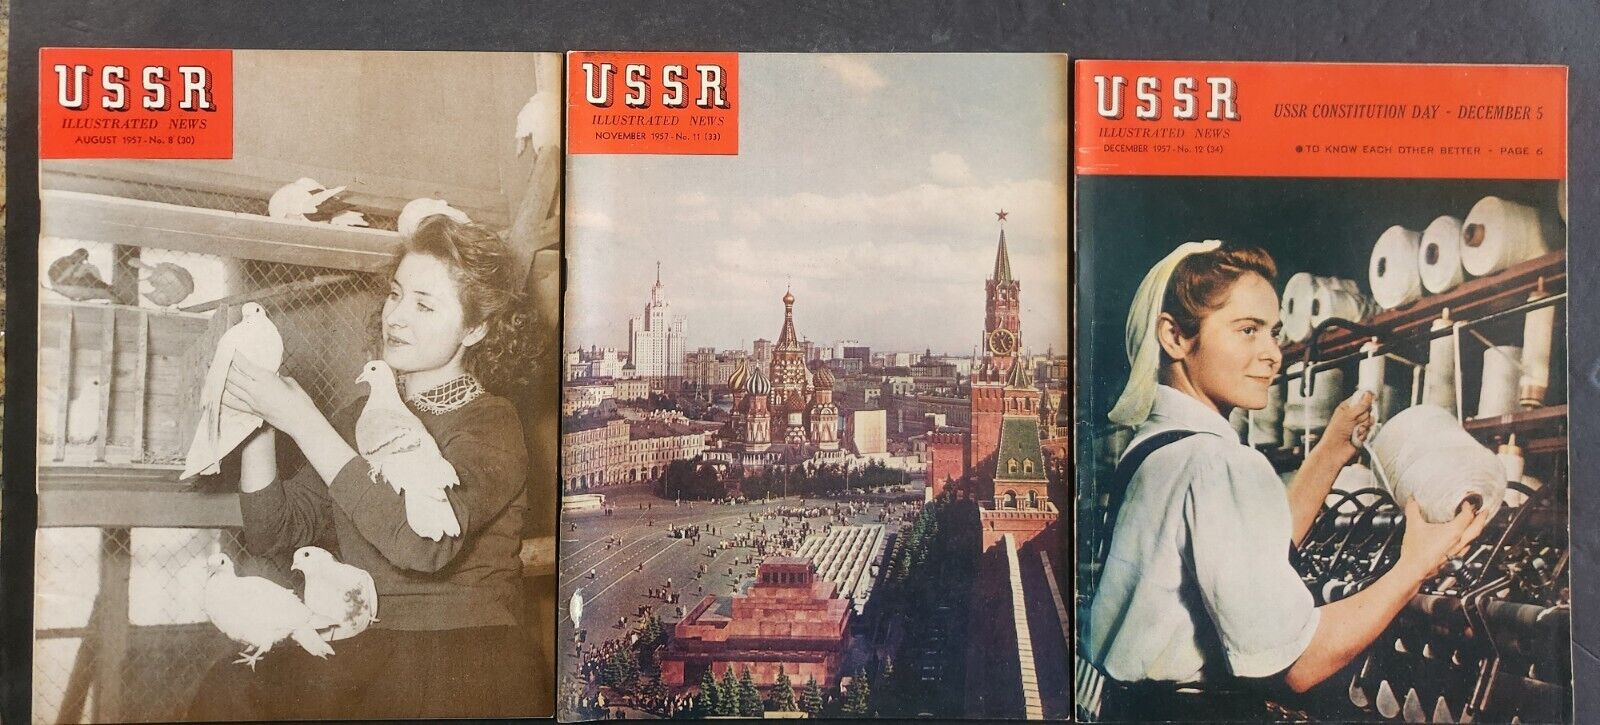 1957 VINTAGE USSR ILLUSTRATED NEWS MAGAZINE - LOT OF 3,  USSR - COLD WAR VF